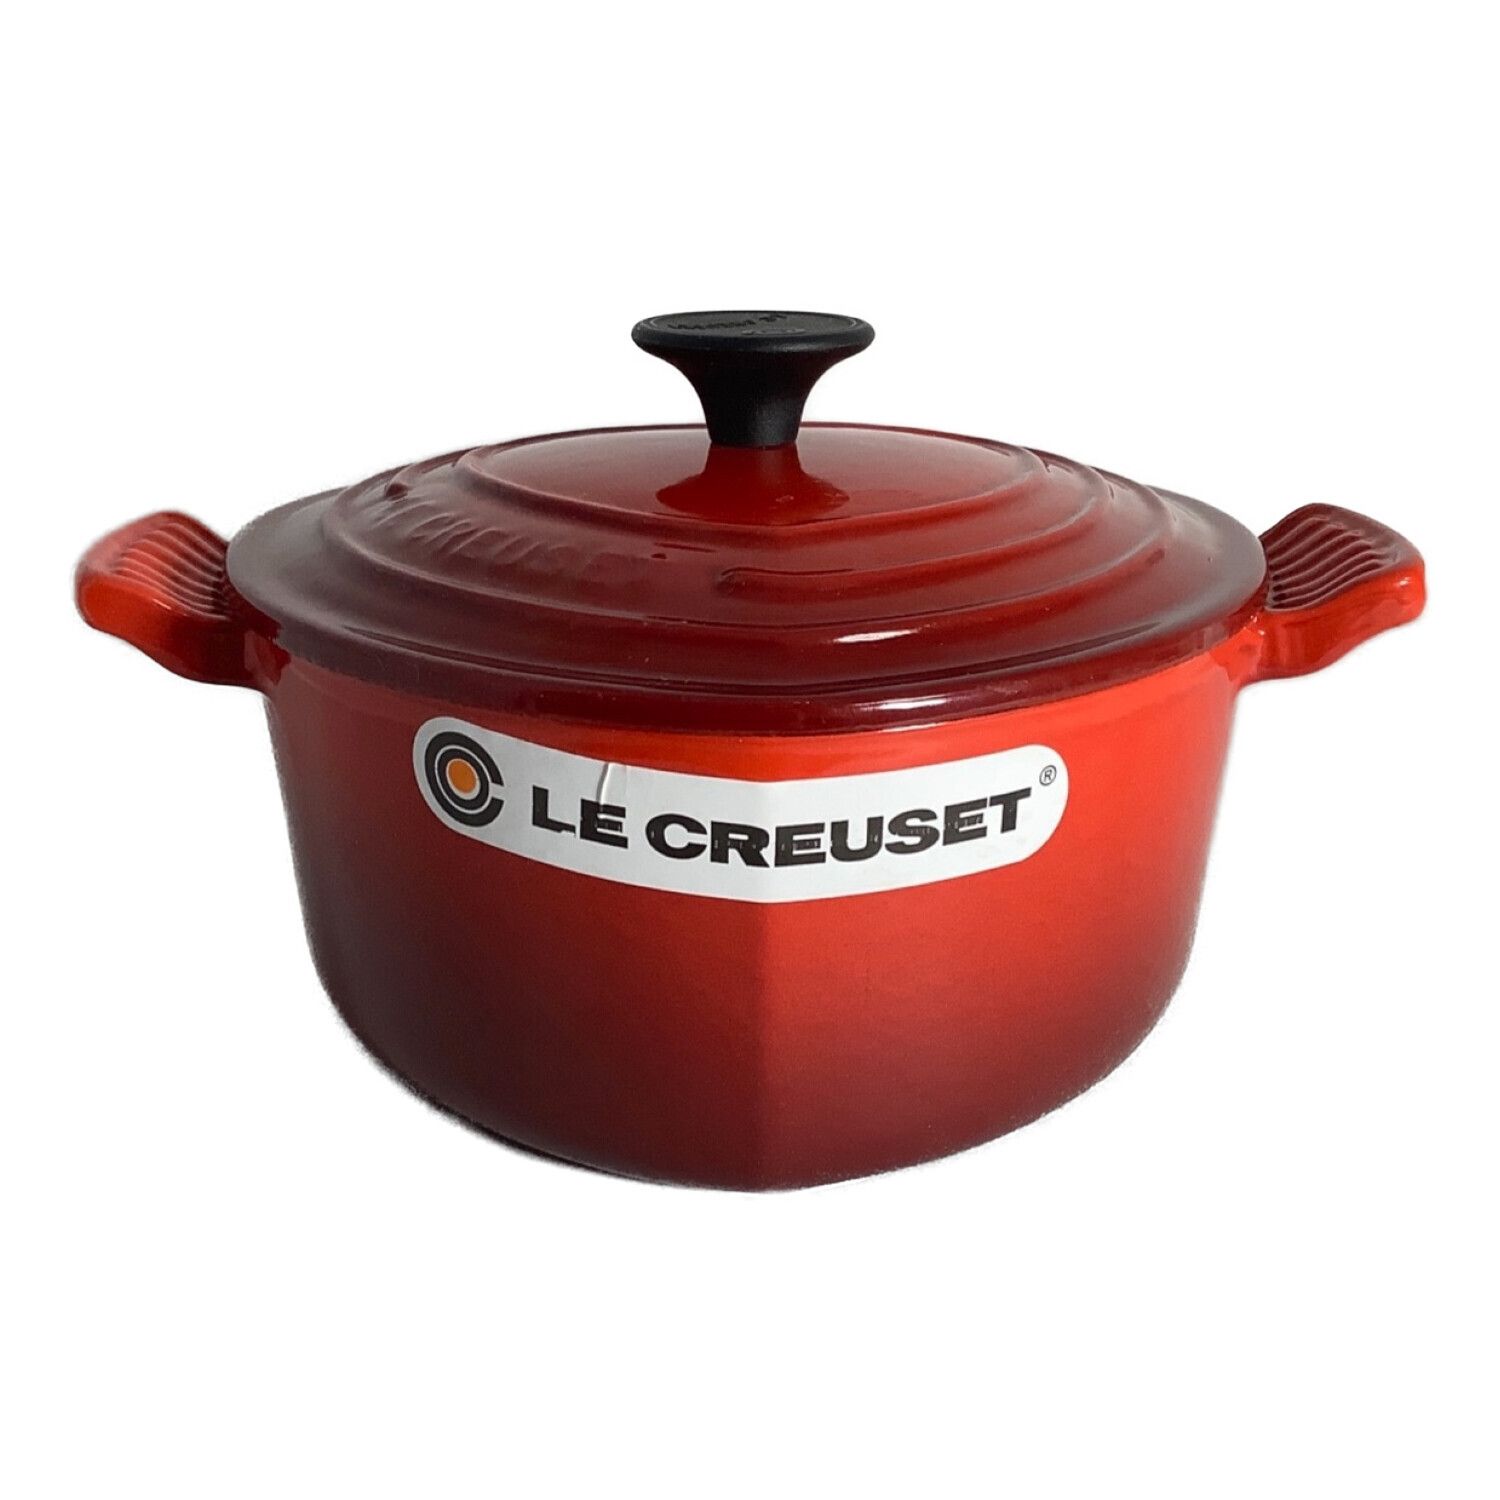 LE CREUSET (ルクルーゼ) 両手鍋 レッド 18cm/レッド/ココットダムール